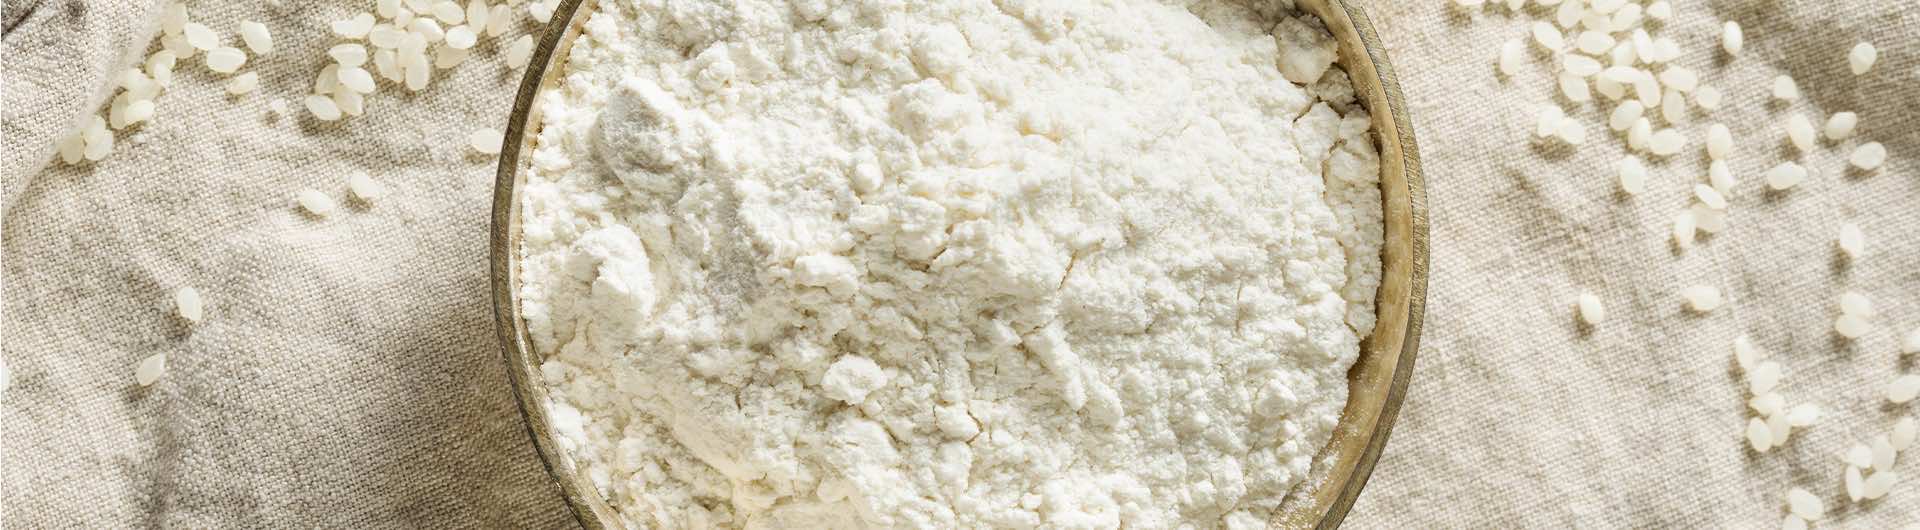 Japanese Rice Flour